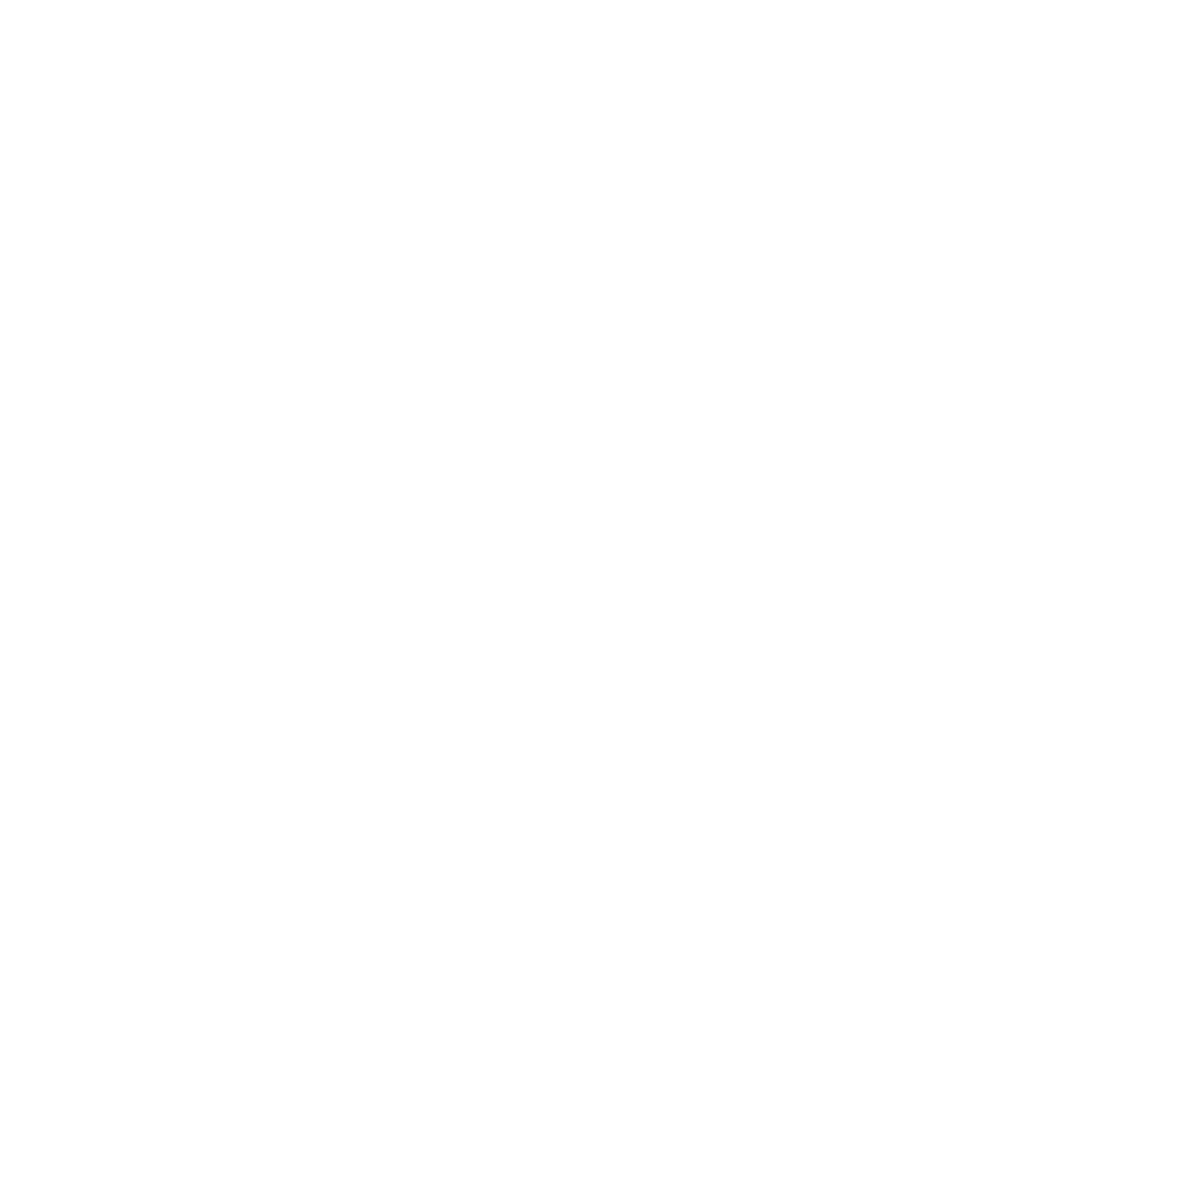 Search Arbitrage